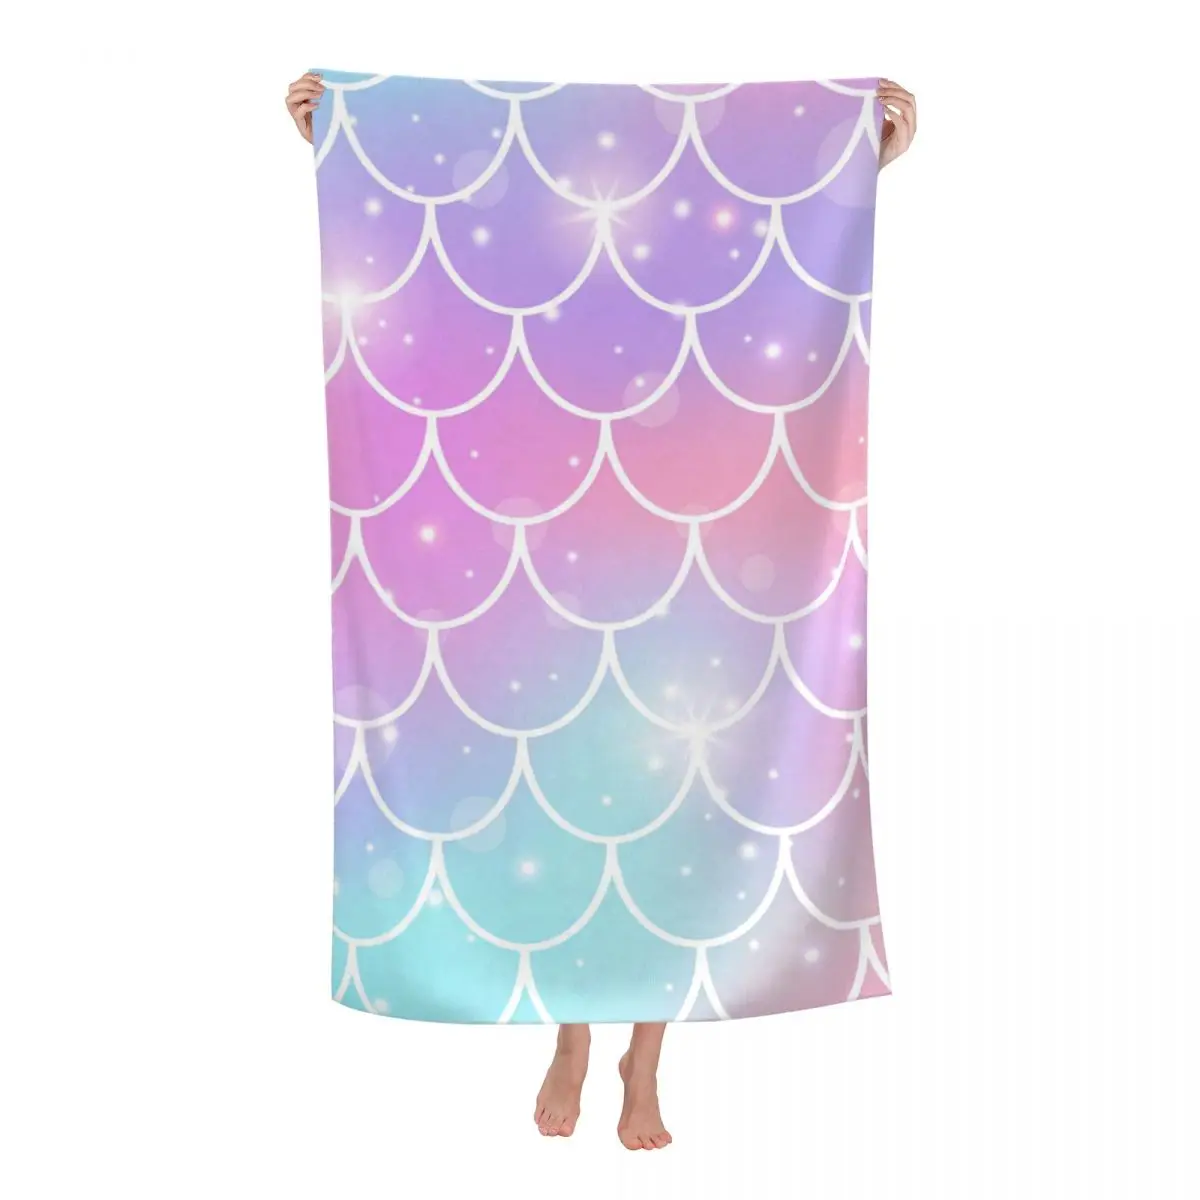 

Пляжное полотенце из микрофибры, мягкое быстросохнущее банное полотенце в стиле принцессы, с рисунком русалки, радуги, для душа и сауны